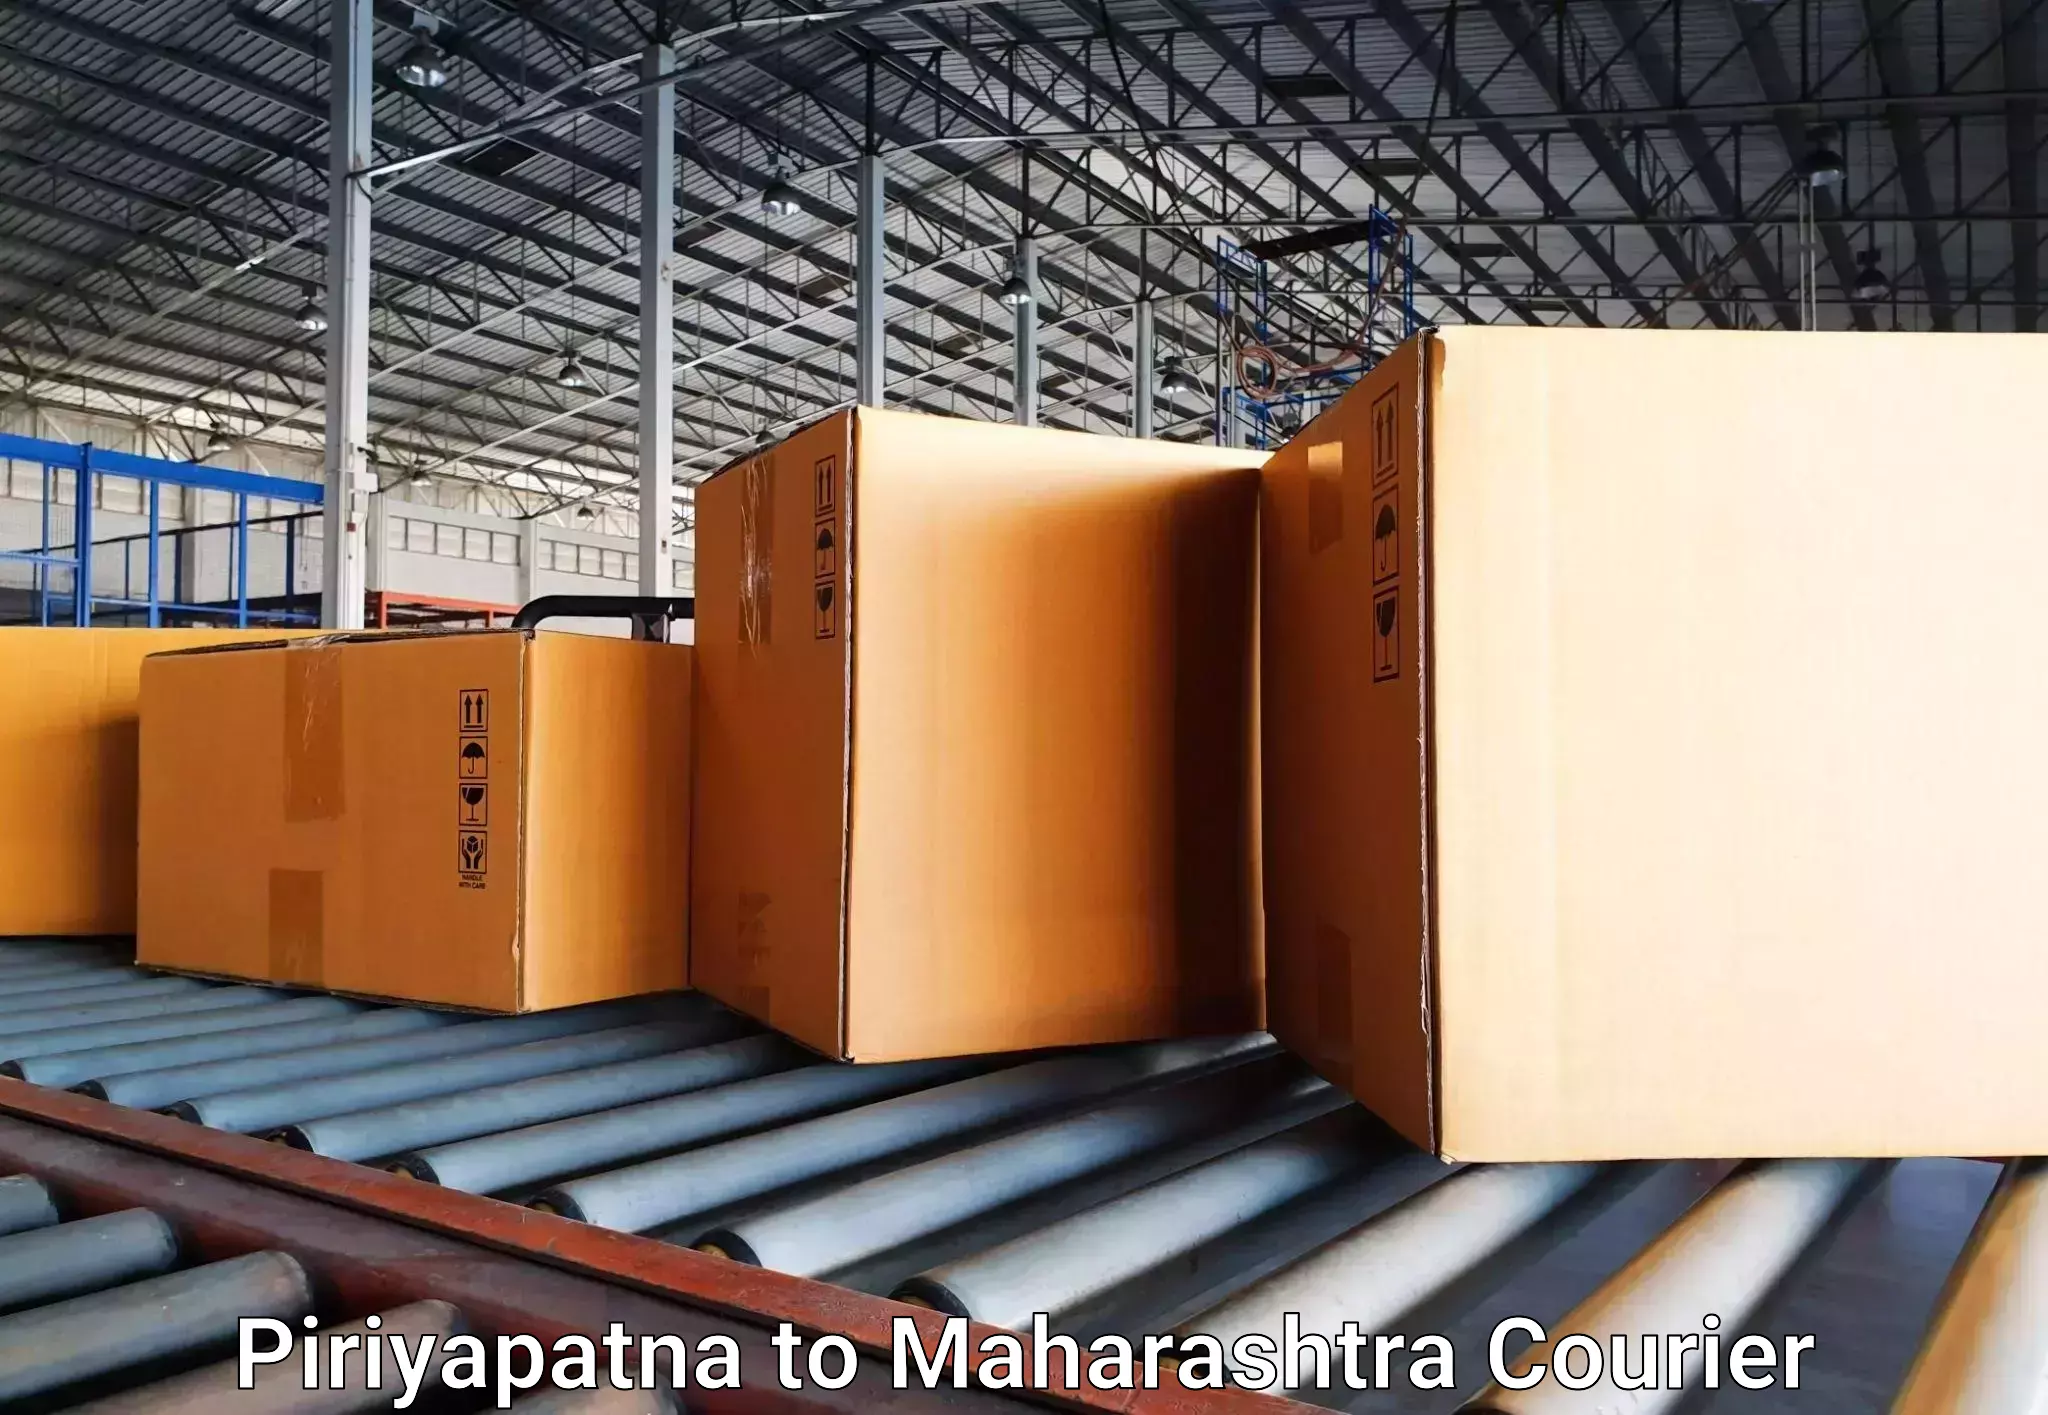 Baggage transport technology Piriyapatna to Karanja